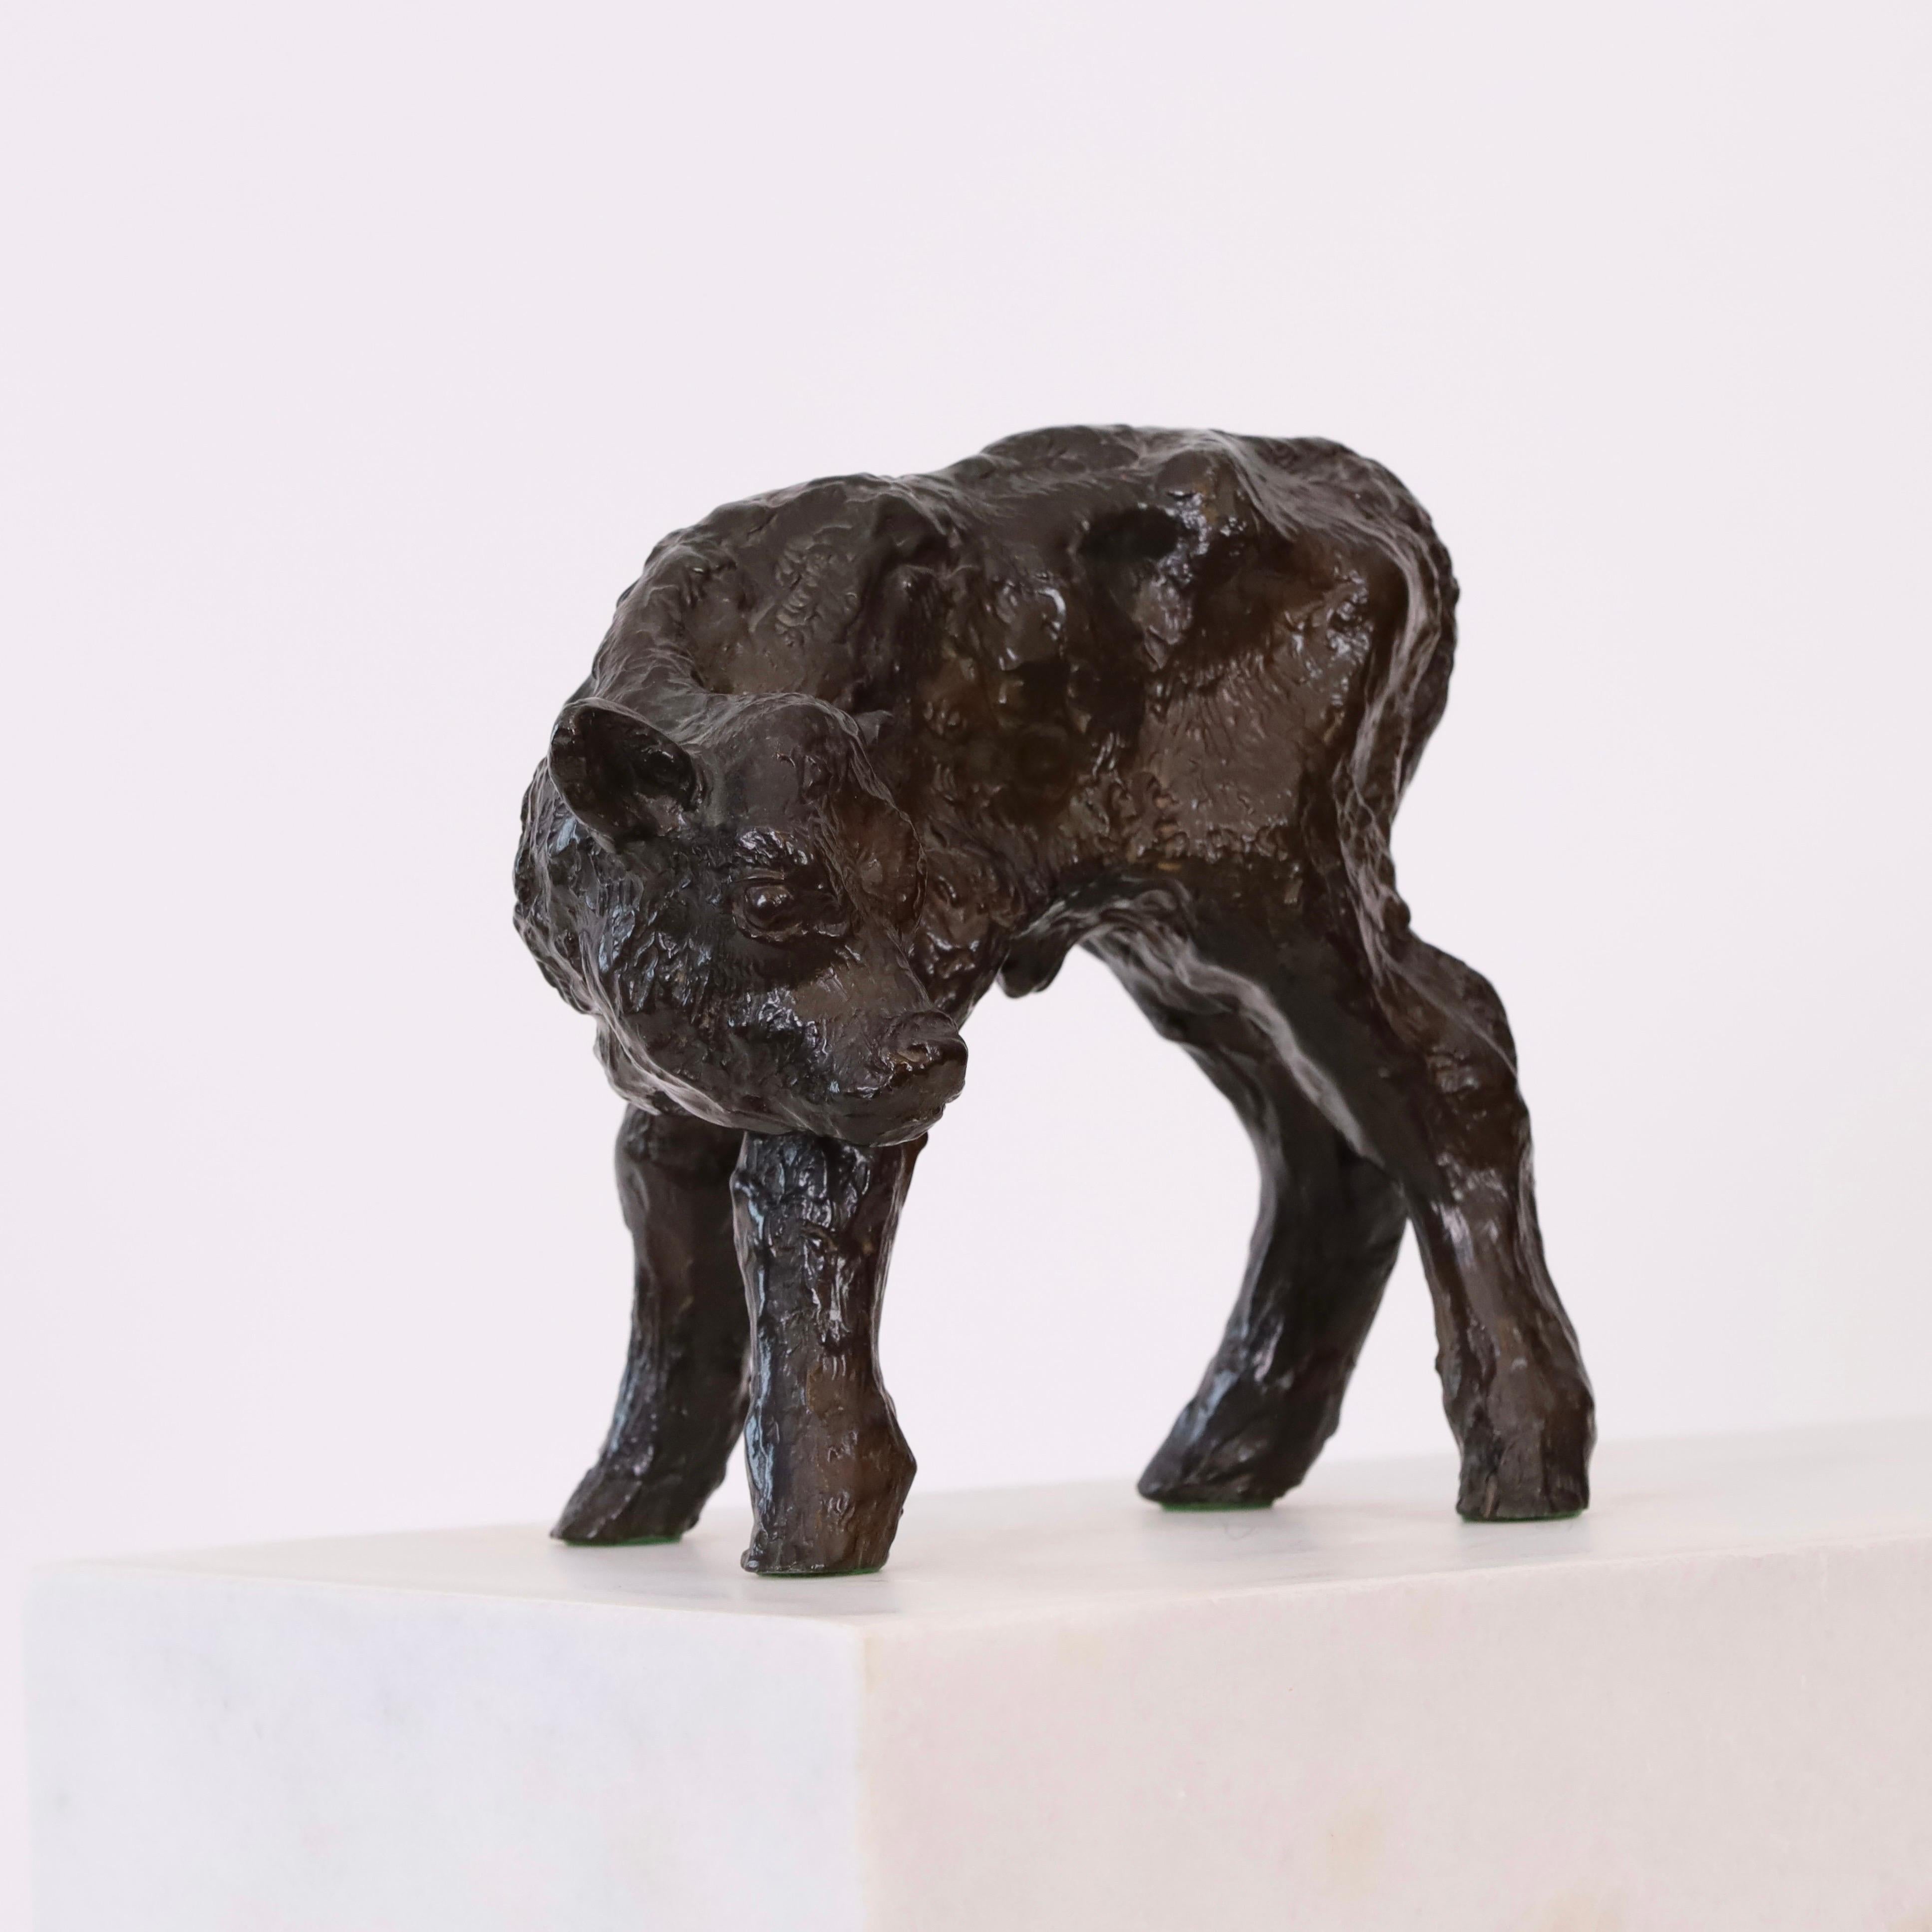 Sculpture naturaliste en métal représentant un veau debout, conçue par Gudrun Lauesen pour Just Andersen dans les années 1940. Un exemple parfait de l'extraordinaire capacité de Lauesens à réaliser des portraits naturalistes d'animaux.

* Une